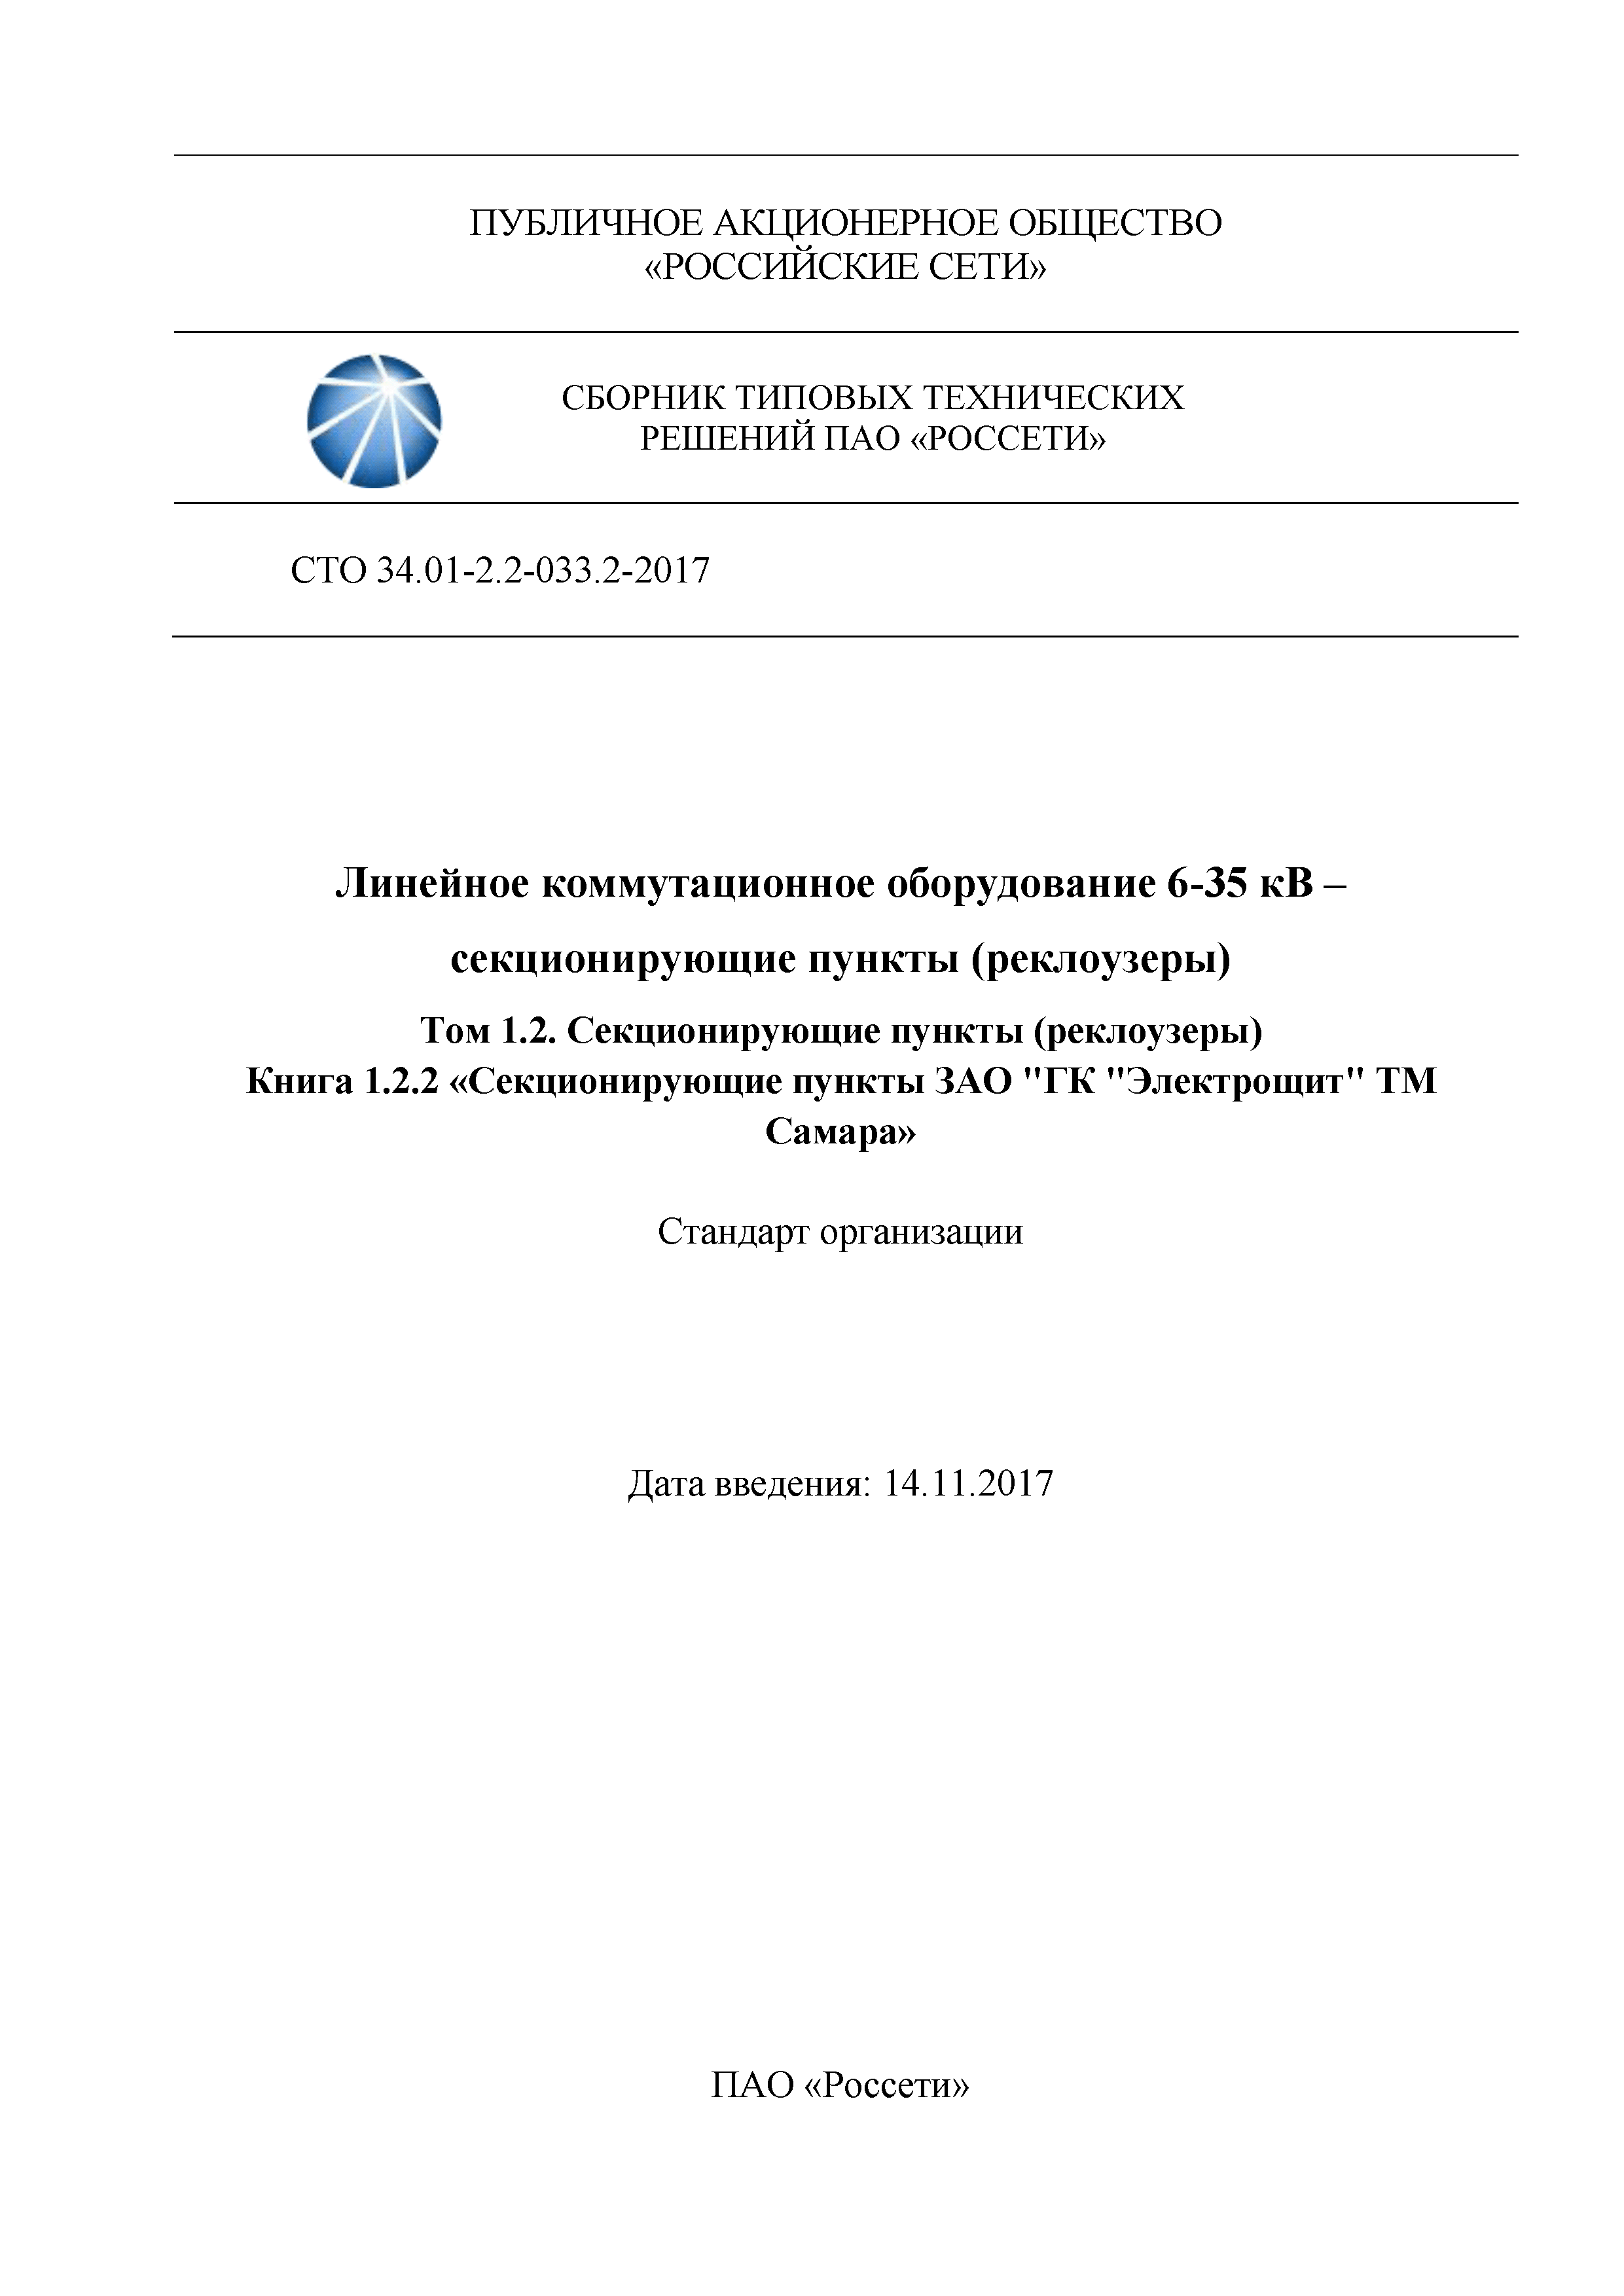 СТО 34.01-2.2-033.2-2017